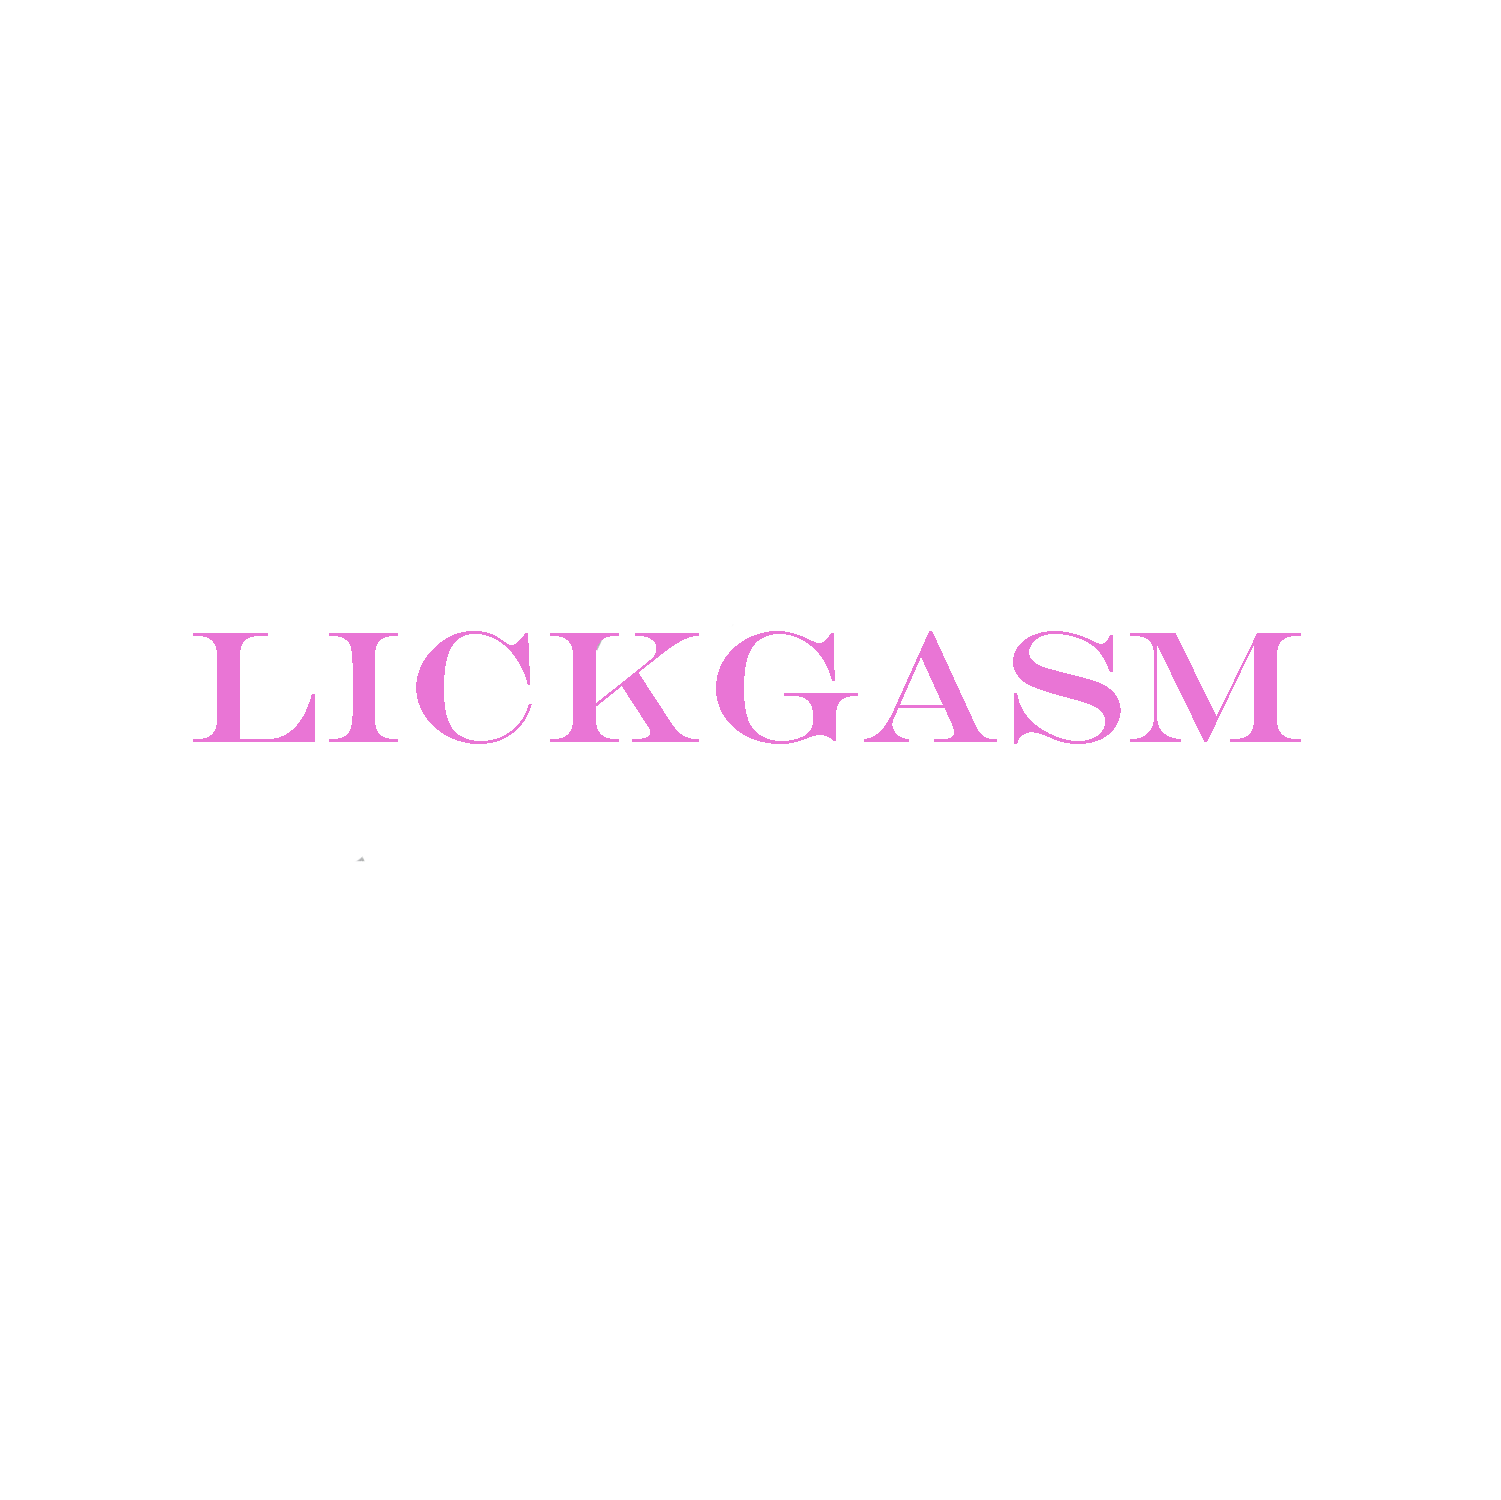 Lickgasm